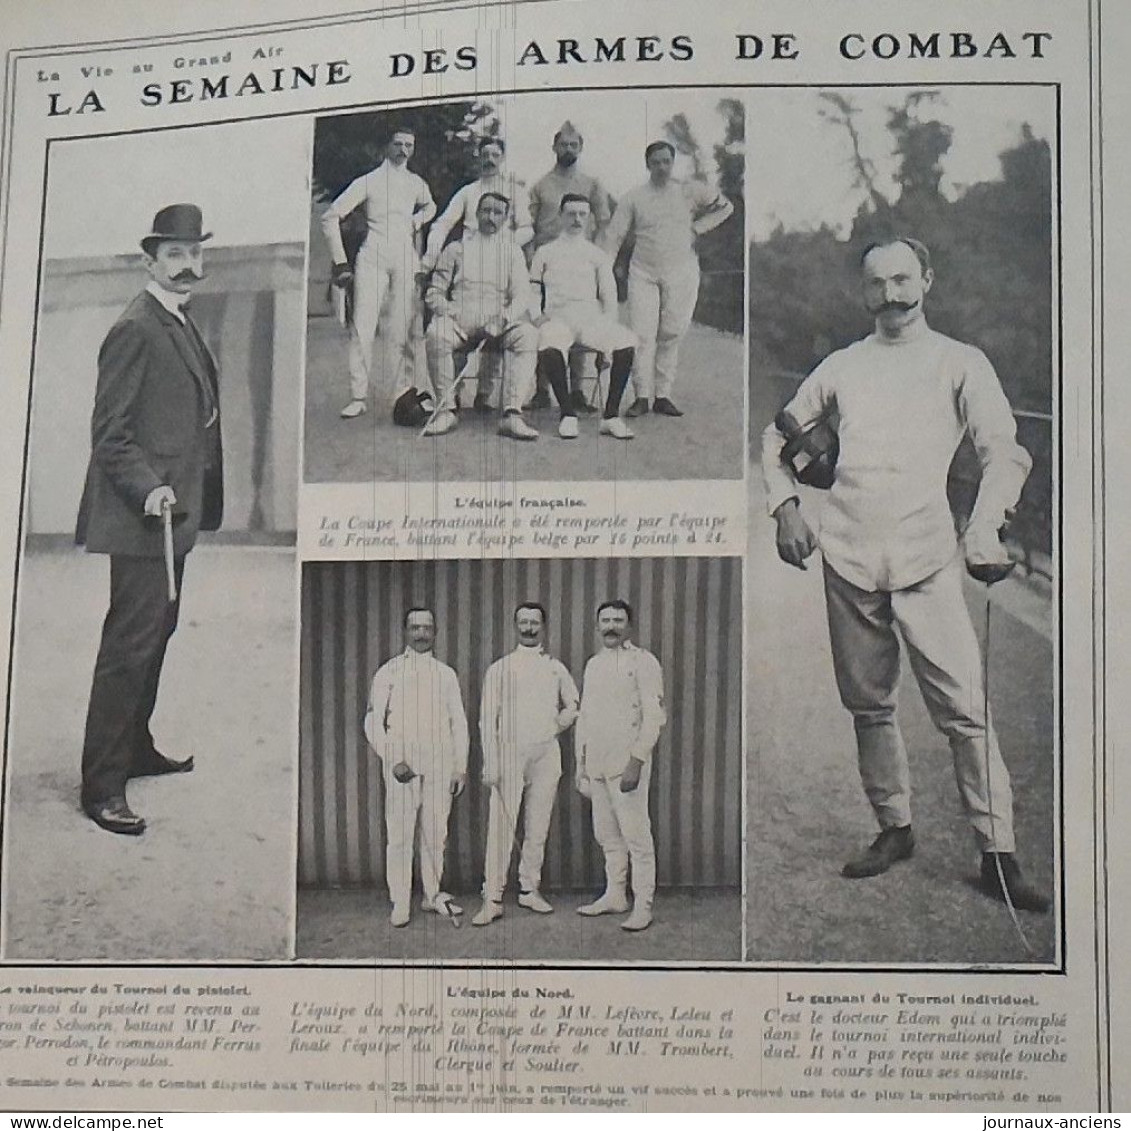 1907 LA SEMAINE DES ARMES DE COMBAT - DISPUTÉE AUX TUILLERIES - BARON DE SCHONEN - Dorteur EDOM - EQUIPE DU NORD - Arti Martiali